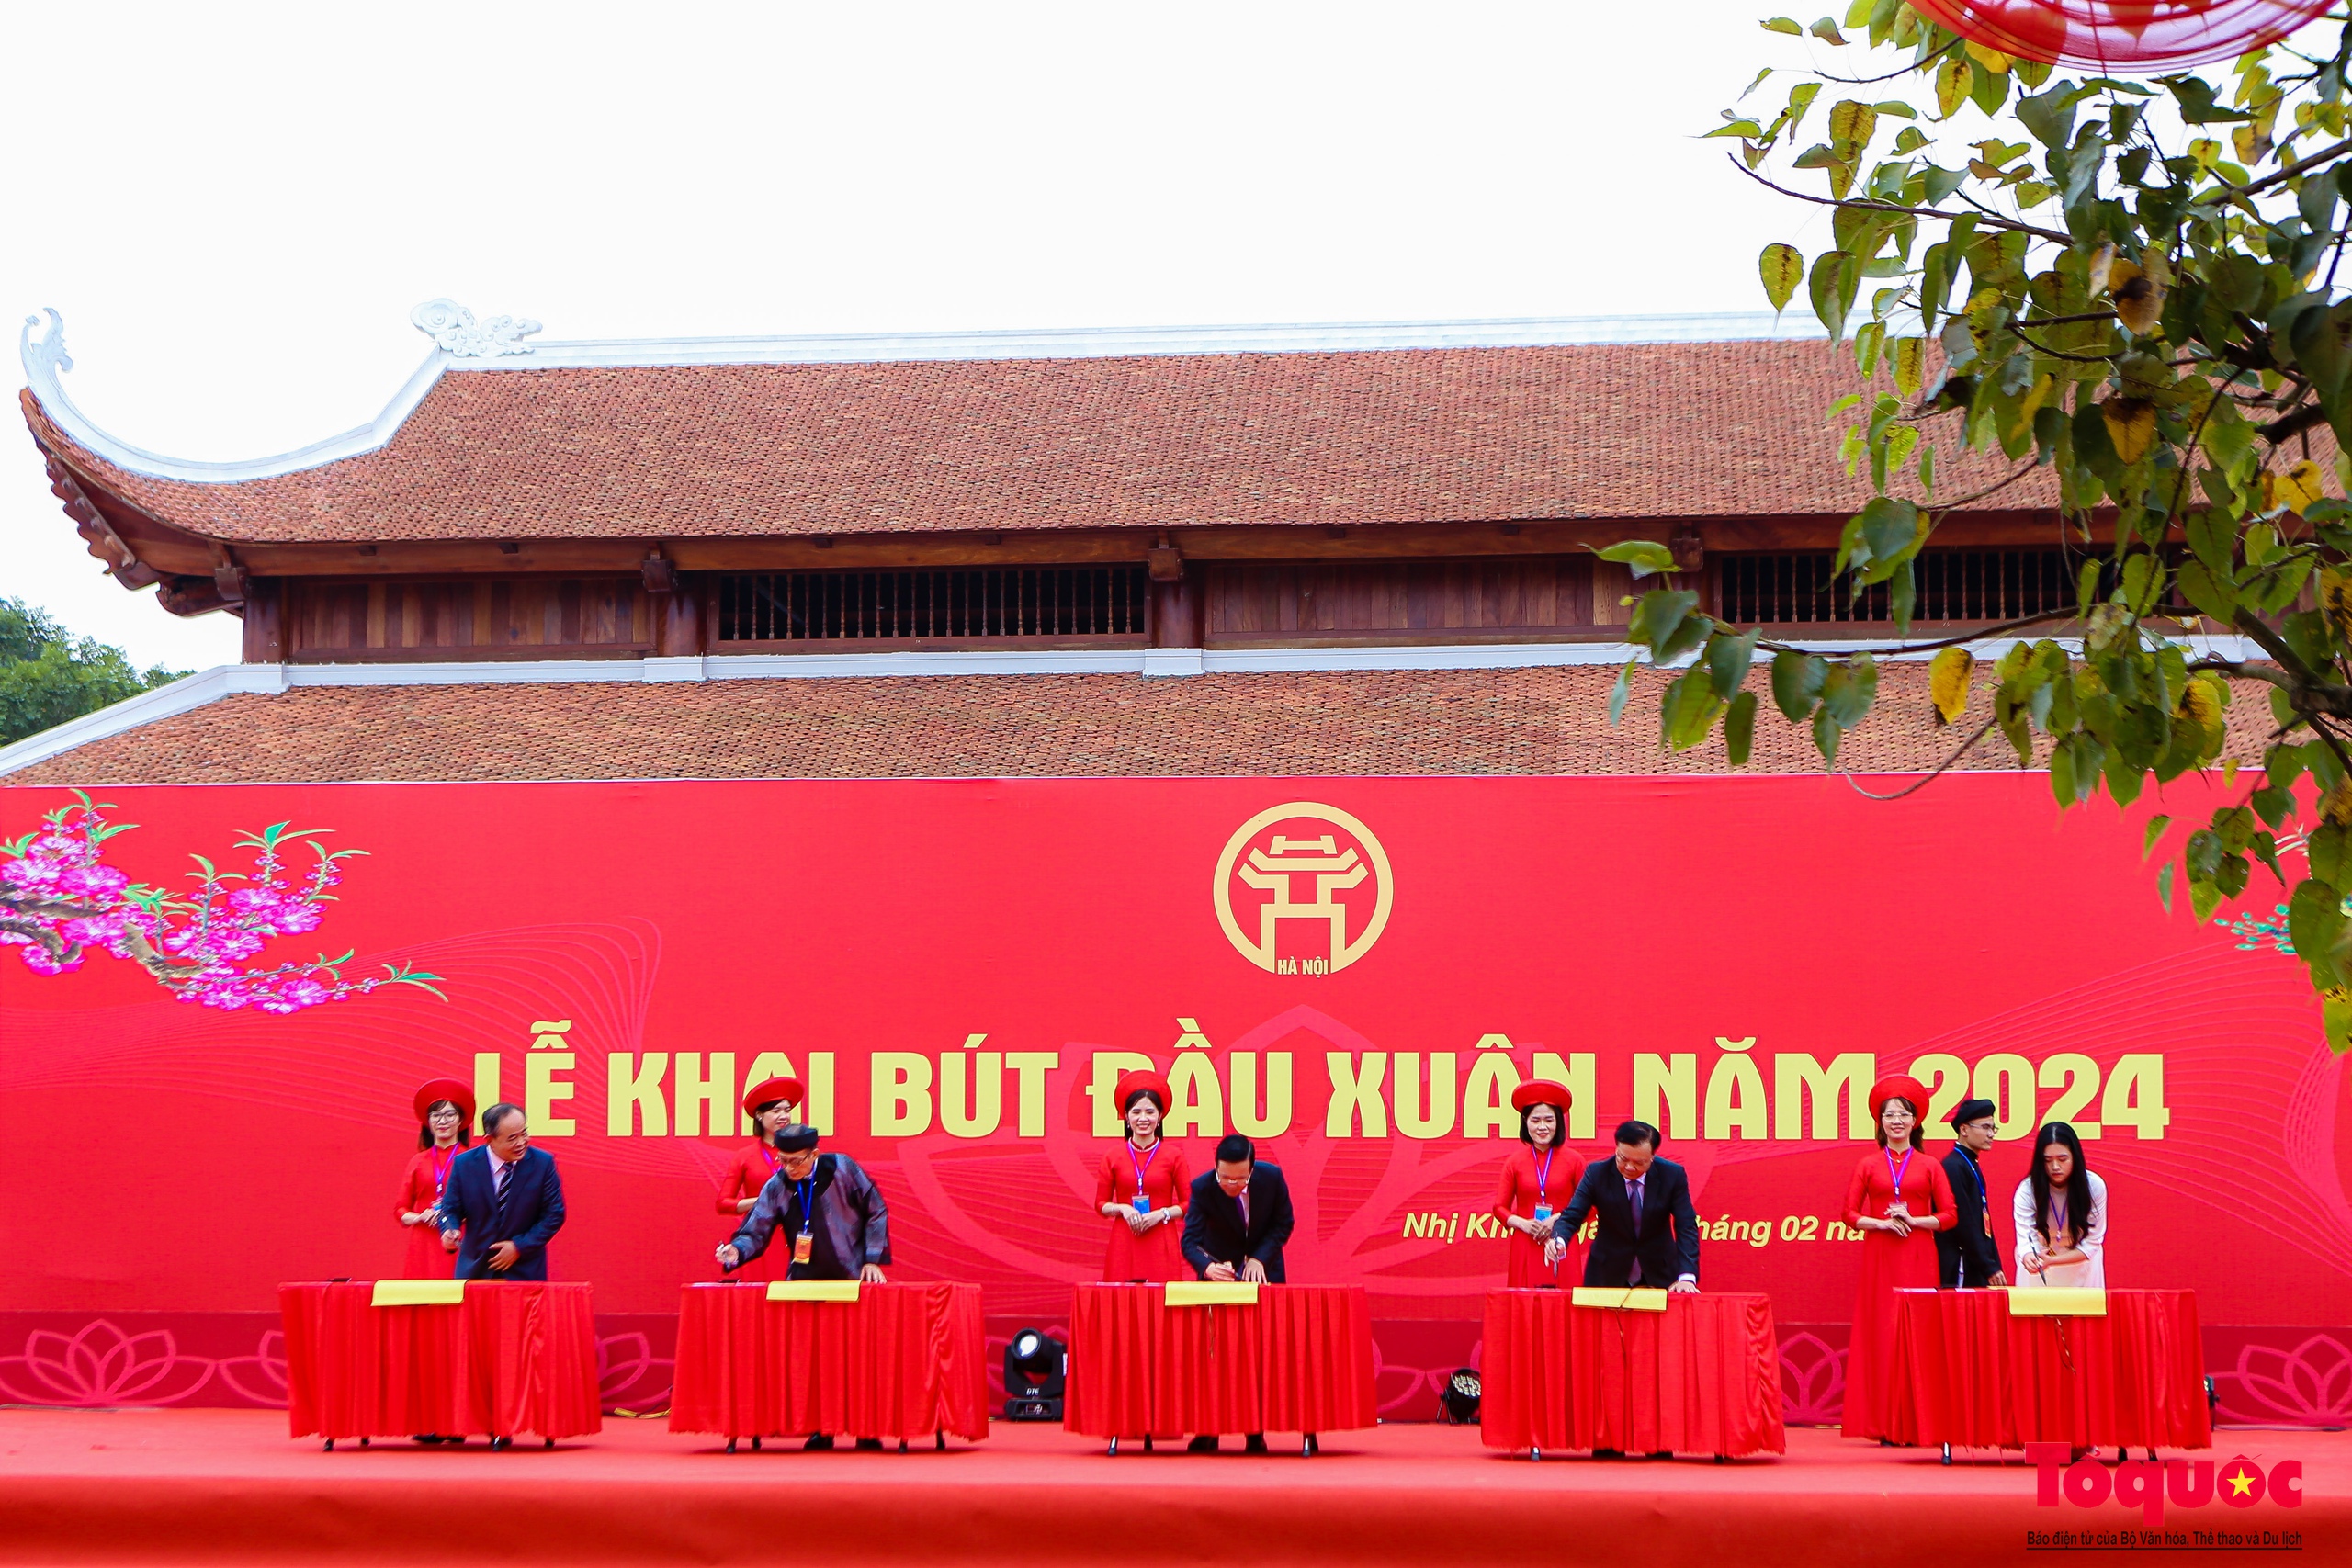 Chủ tịch nước Võ Văn Thưởng khai bút đầu năm tại Hà Nội - Ảnh 3.